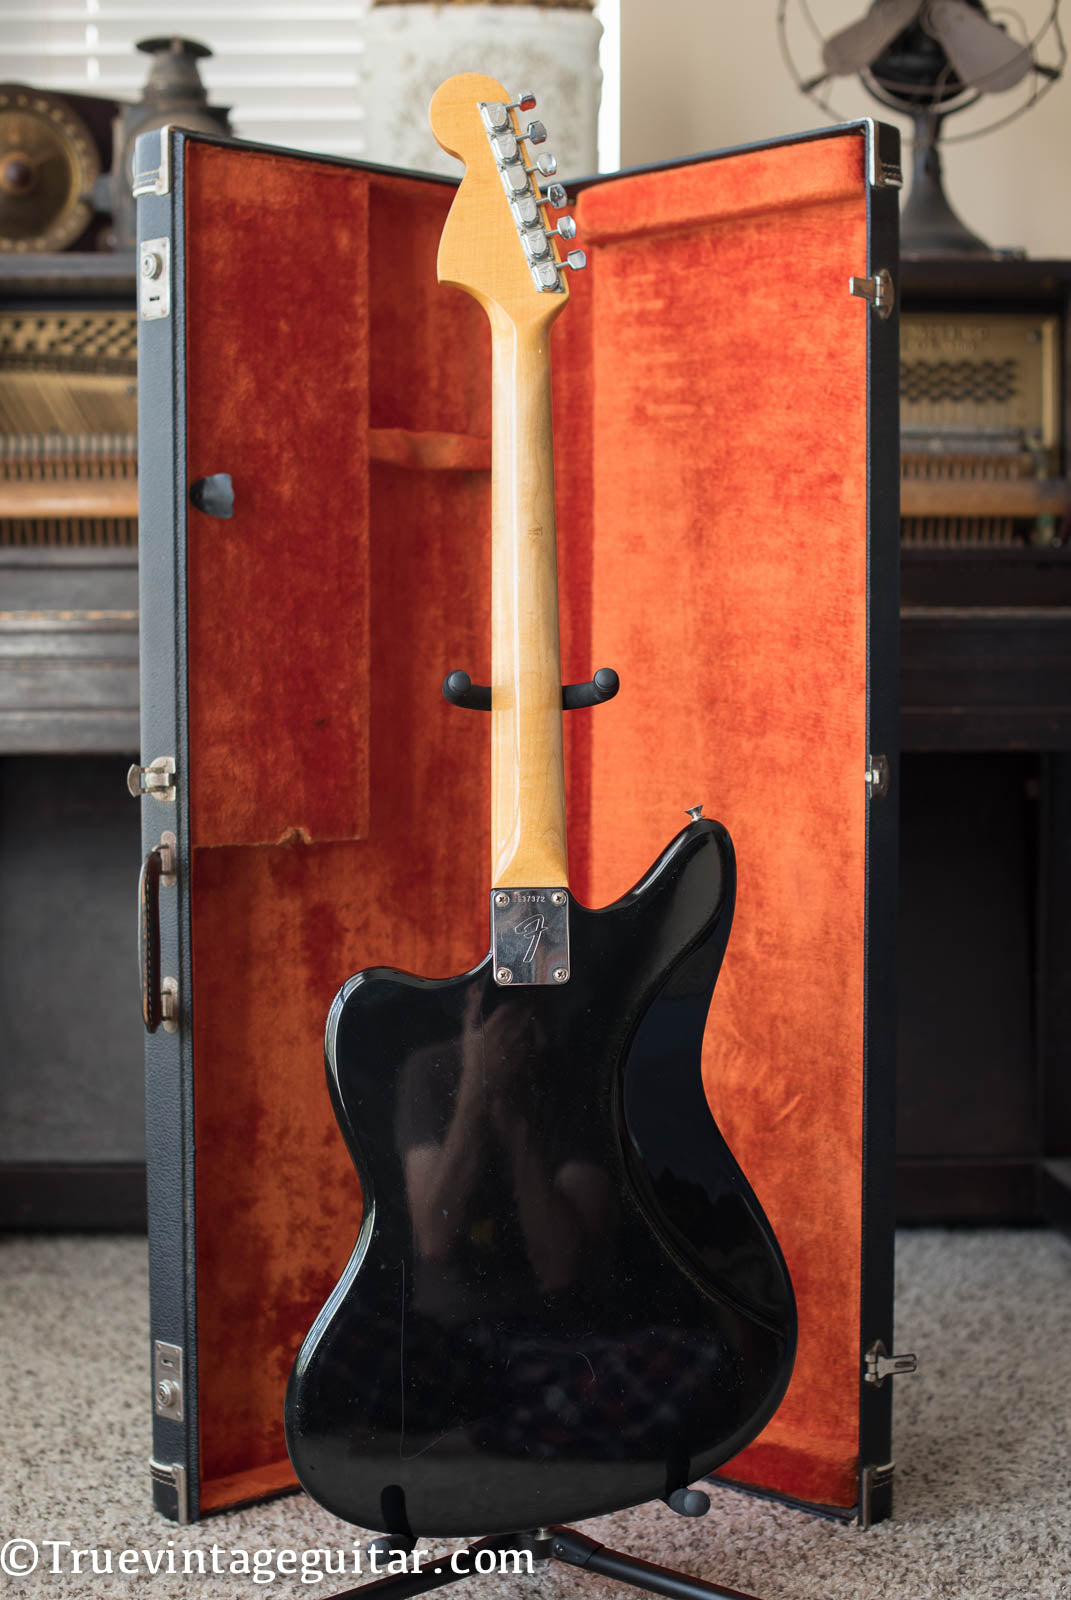 Vintage 1966 Fender Jaguar electric guitar custom color Black matching headstock